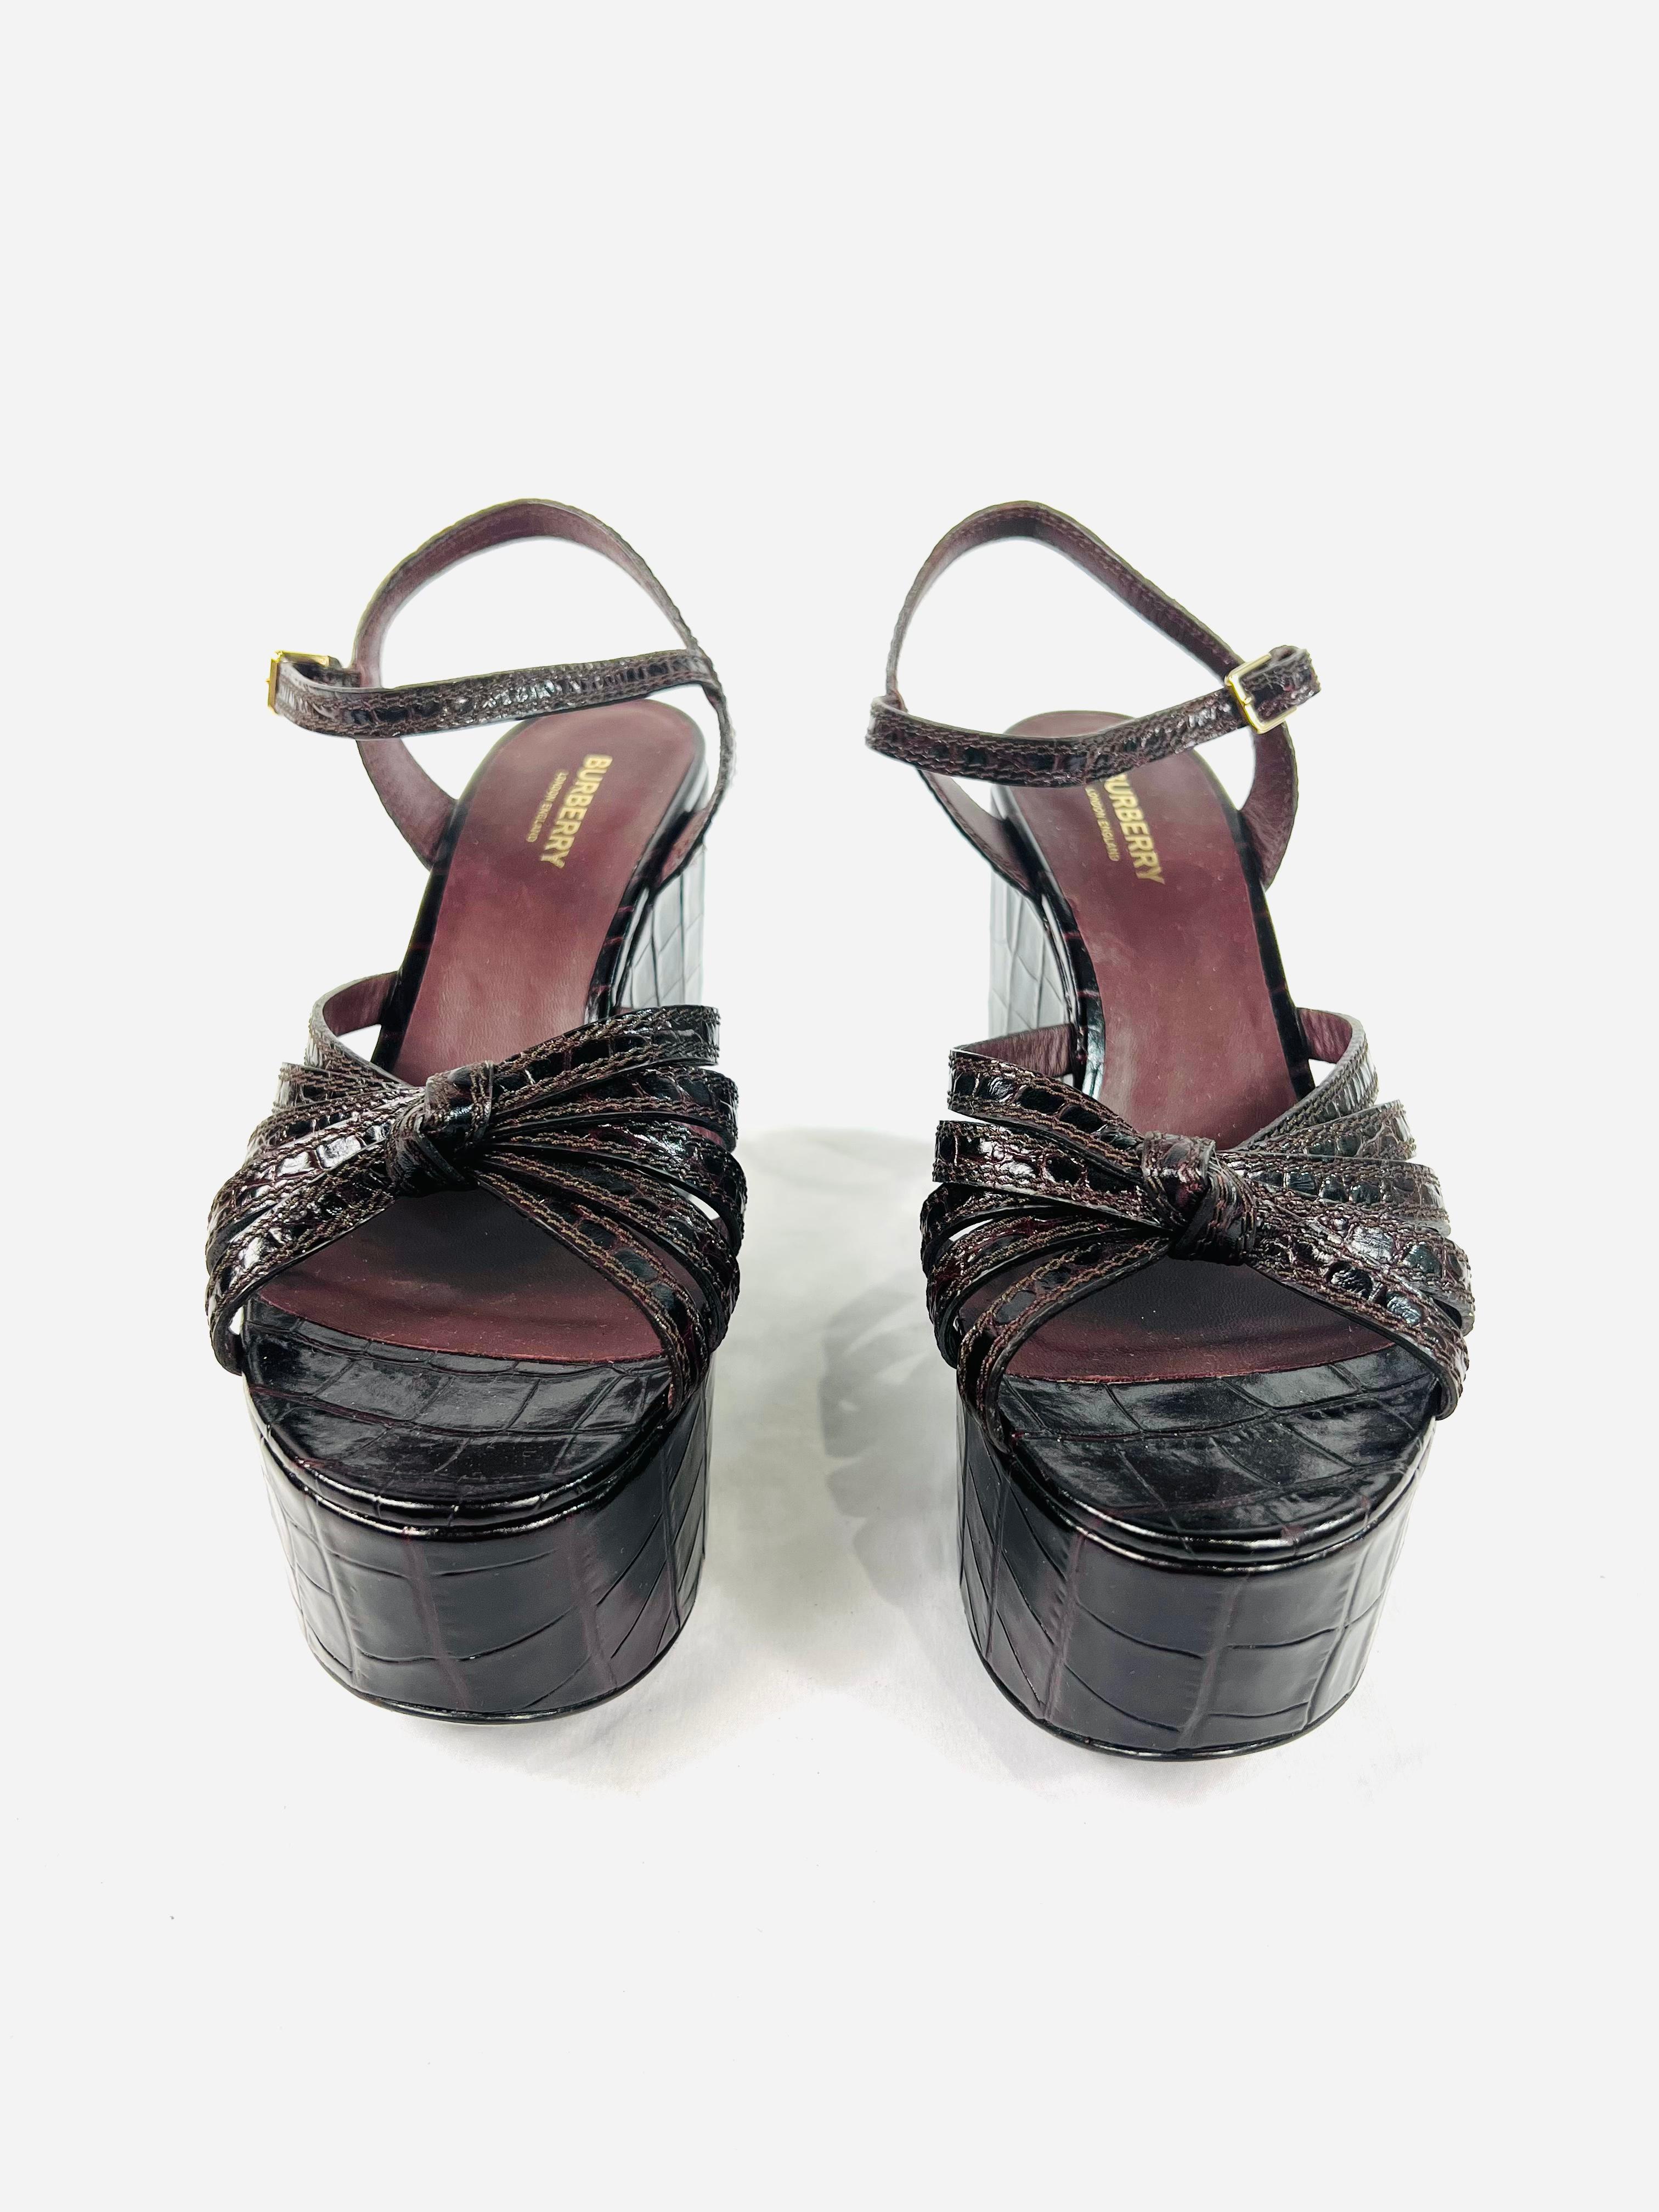 Einzelheiten zum Produkt:

Die Schuhe haben ein Plateau mit Schnallenverschluss und ein gefangenes Design.